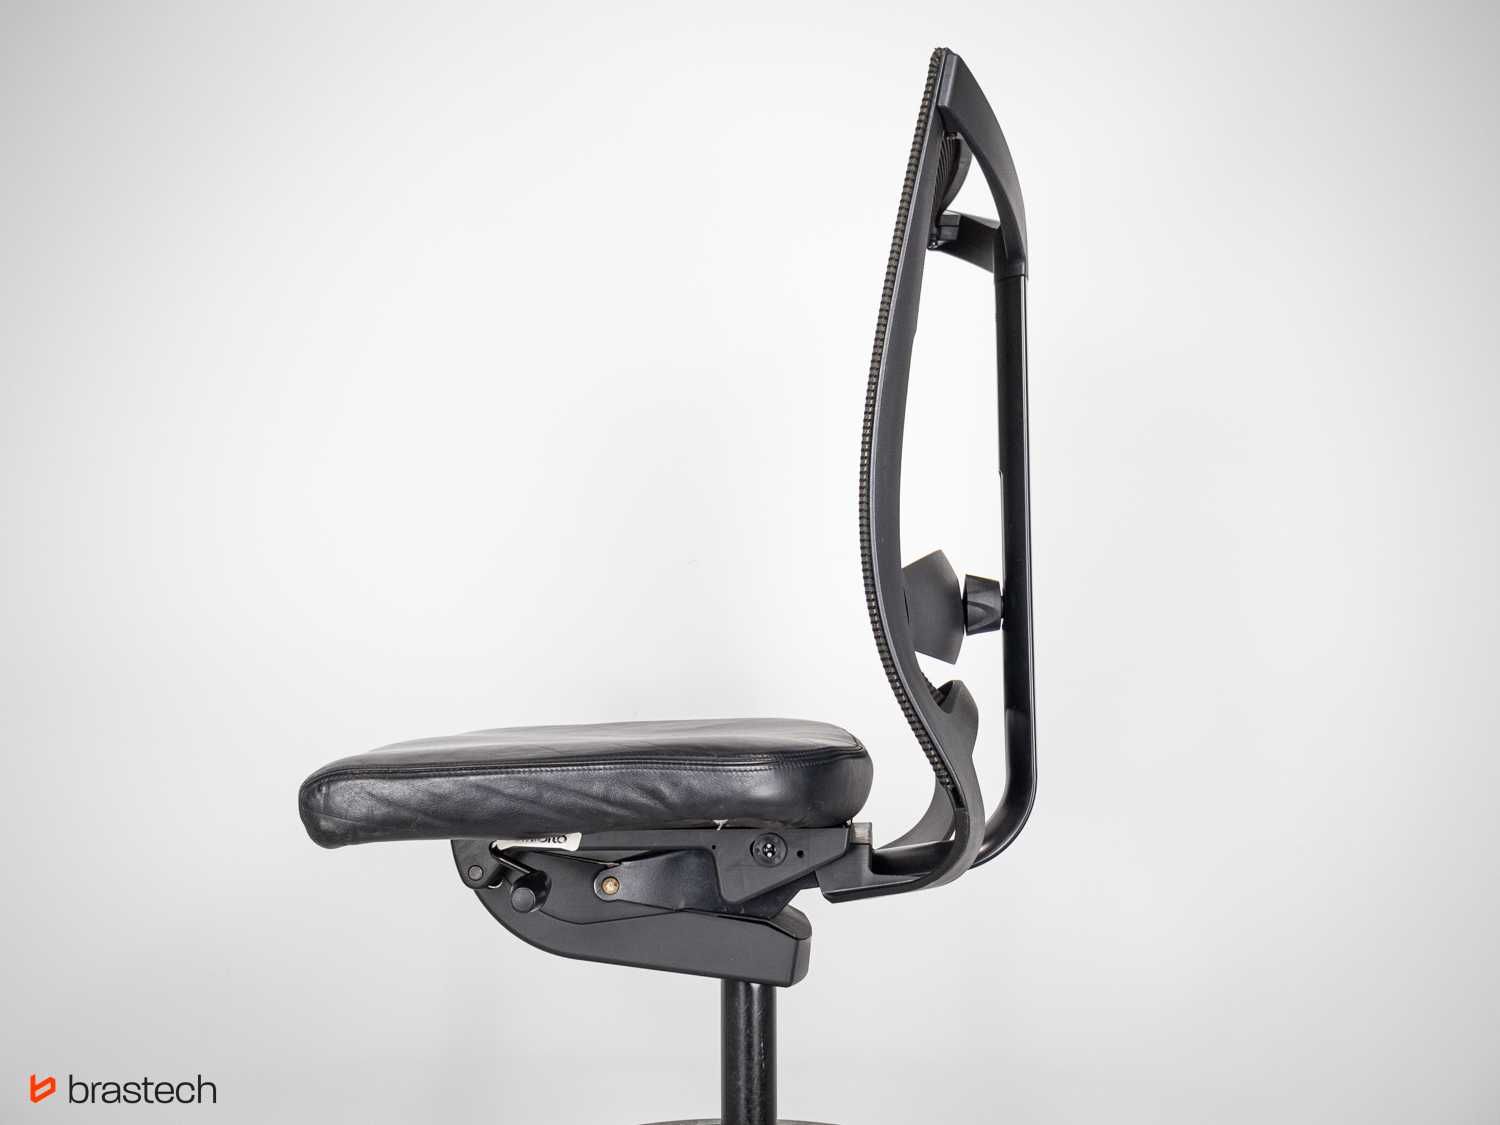 Krzesło przemysłowe Haworth Comforto DX8863